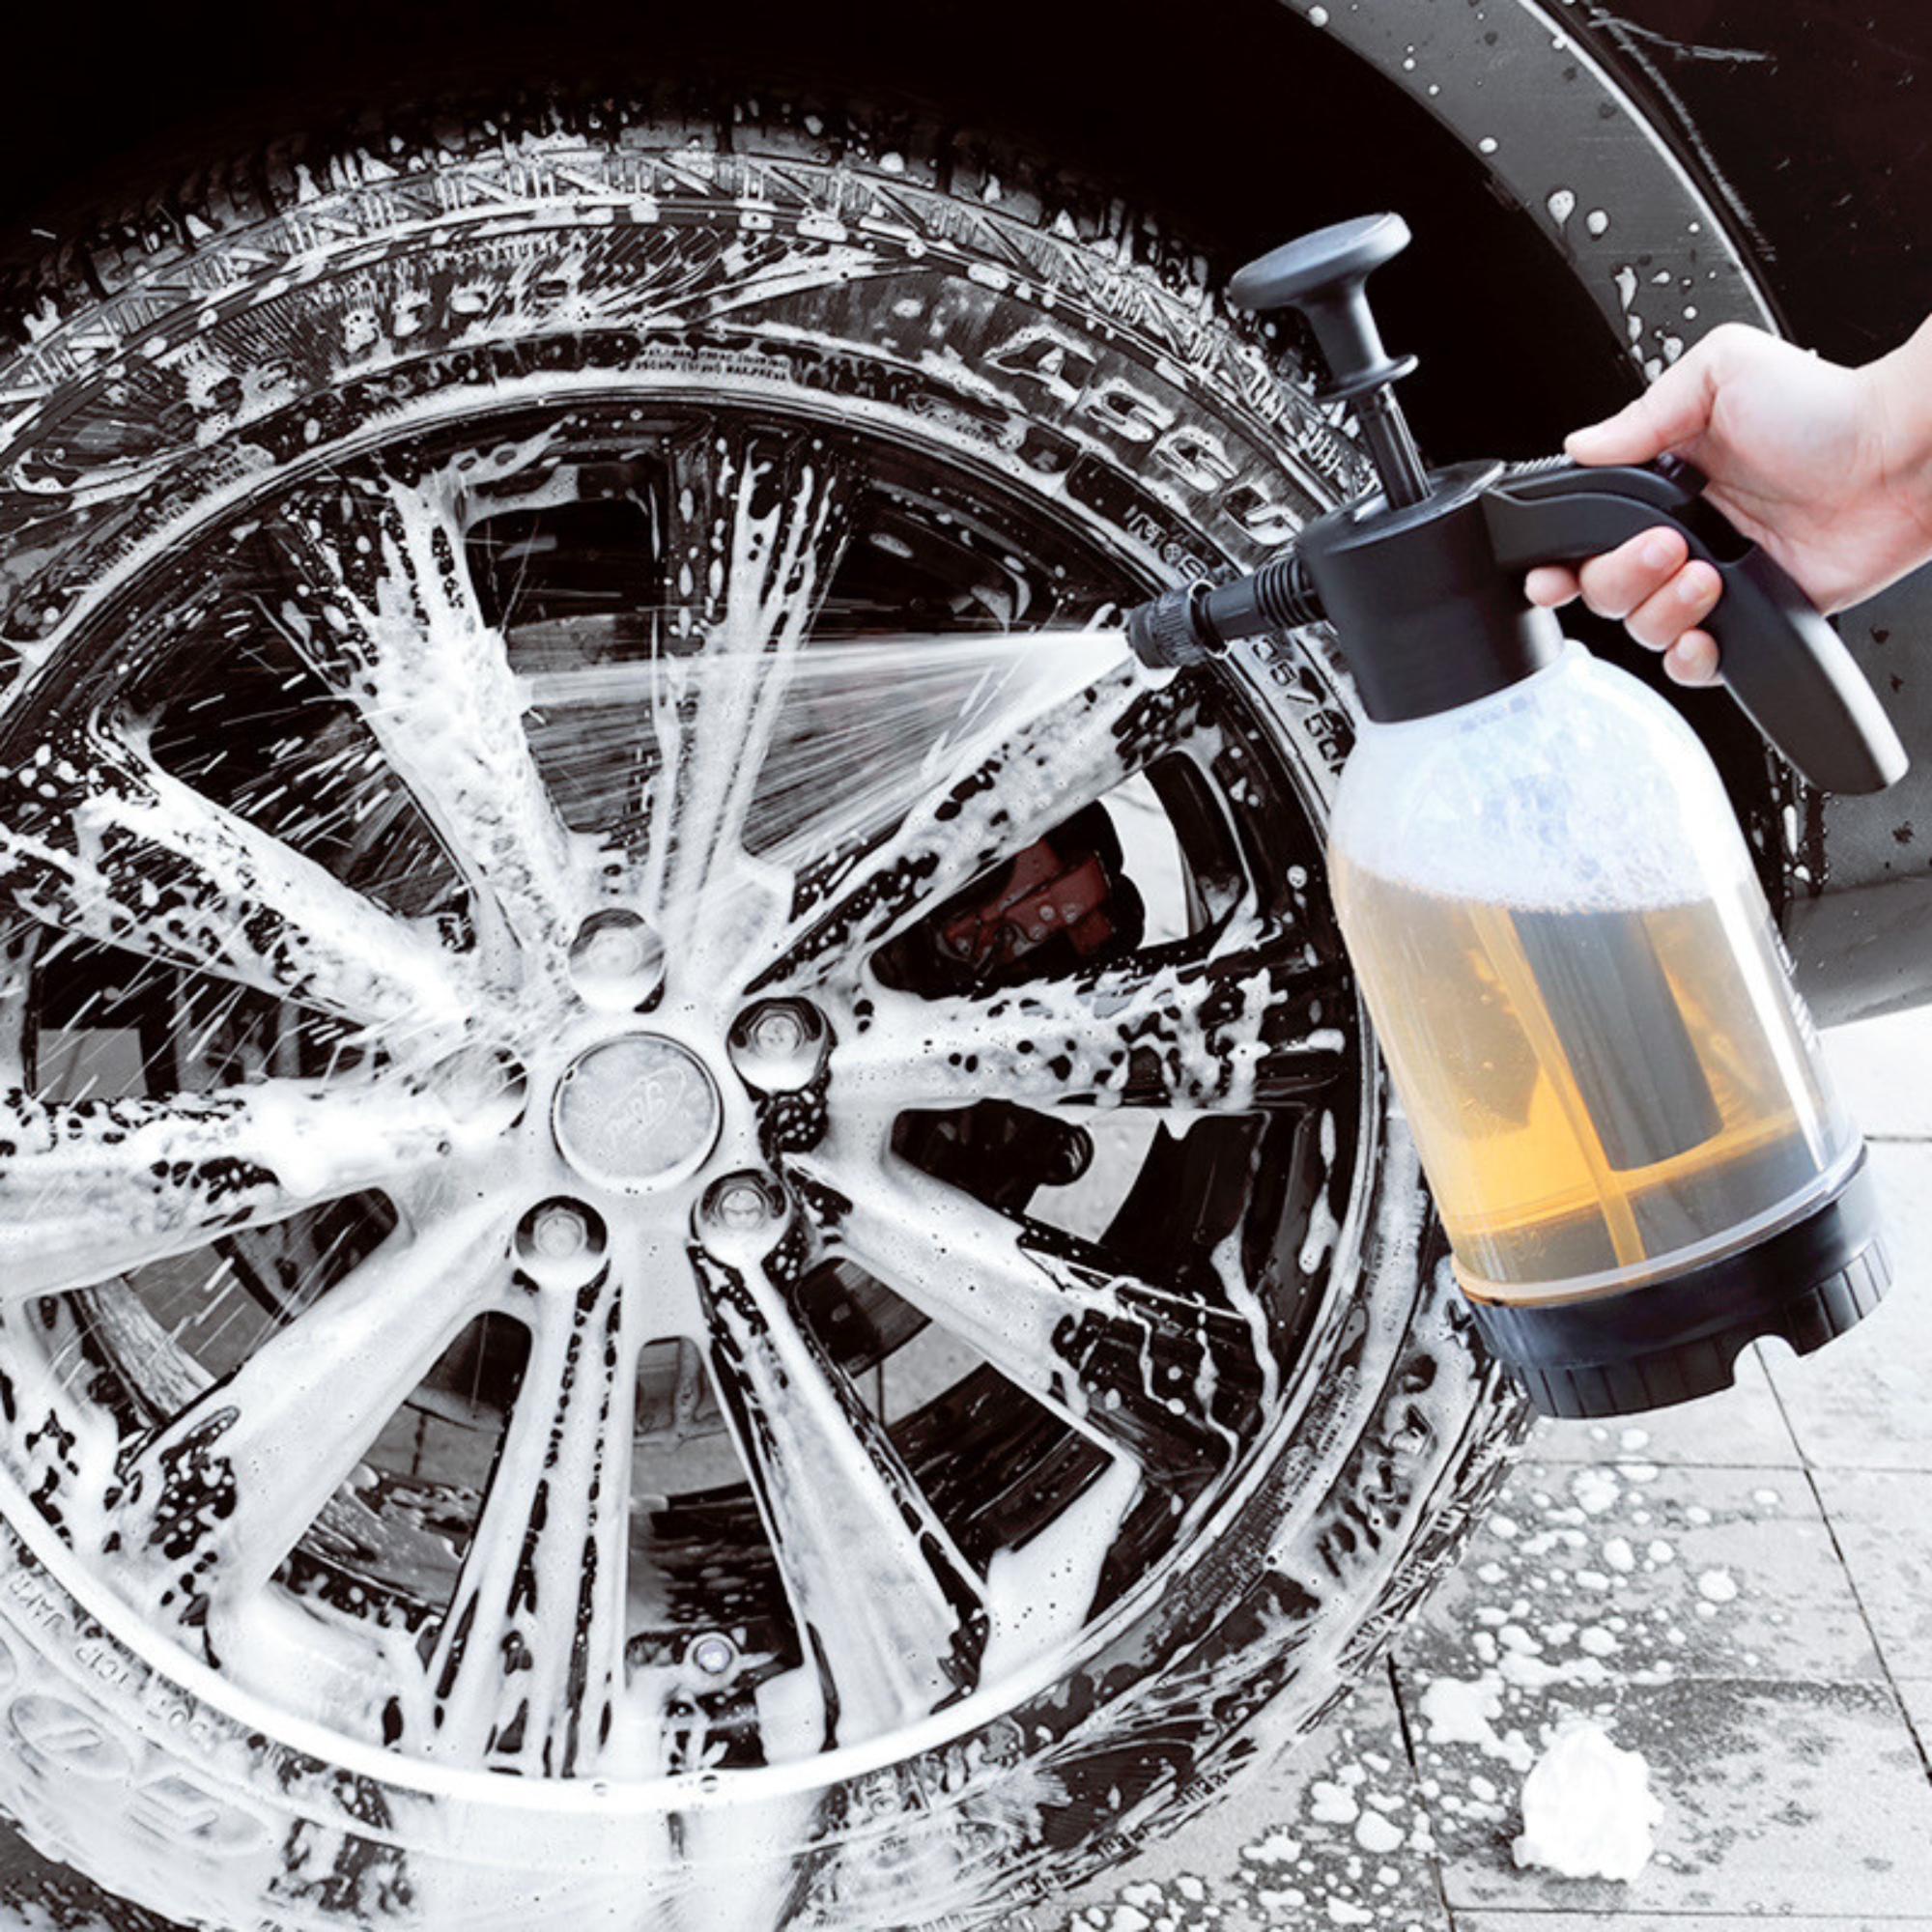 Bình phun bọt tuyết - Bình xịt rửa xe ô Tô cầm tay tạo áp lực khí nén thủ công phù hợp rửa xe gia đình. Dung tích 2 lít.